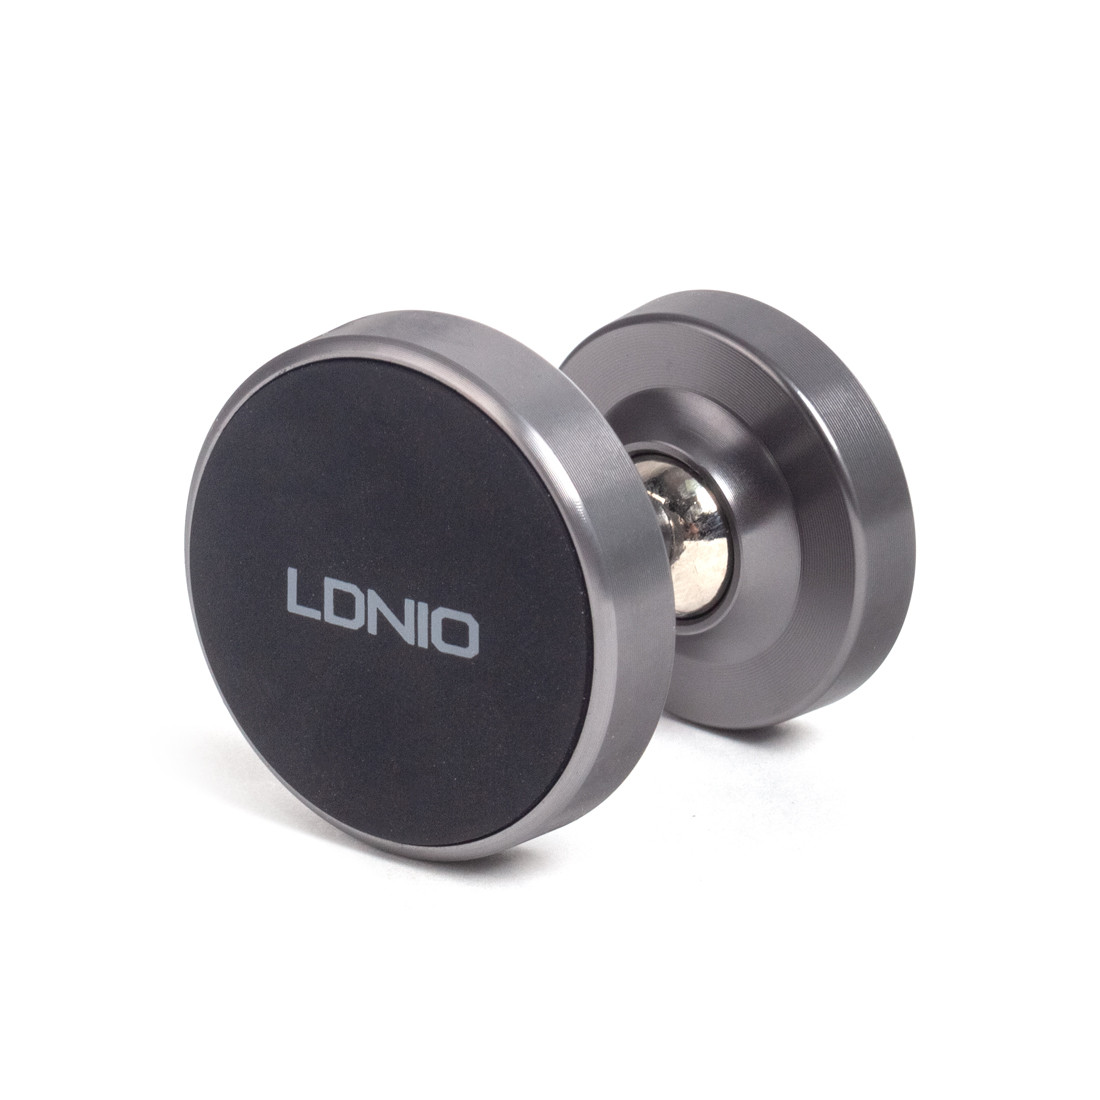 Автомобильный держатель для телефона LDNIO Magnetic MG08 Магнитный, Алюминий+Силикон+ABS Чёрный, фото 1